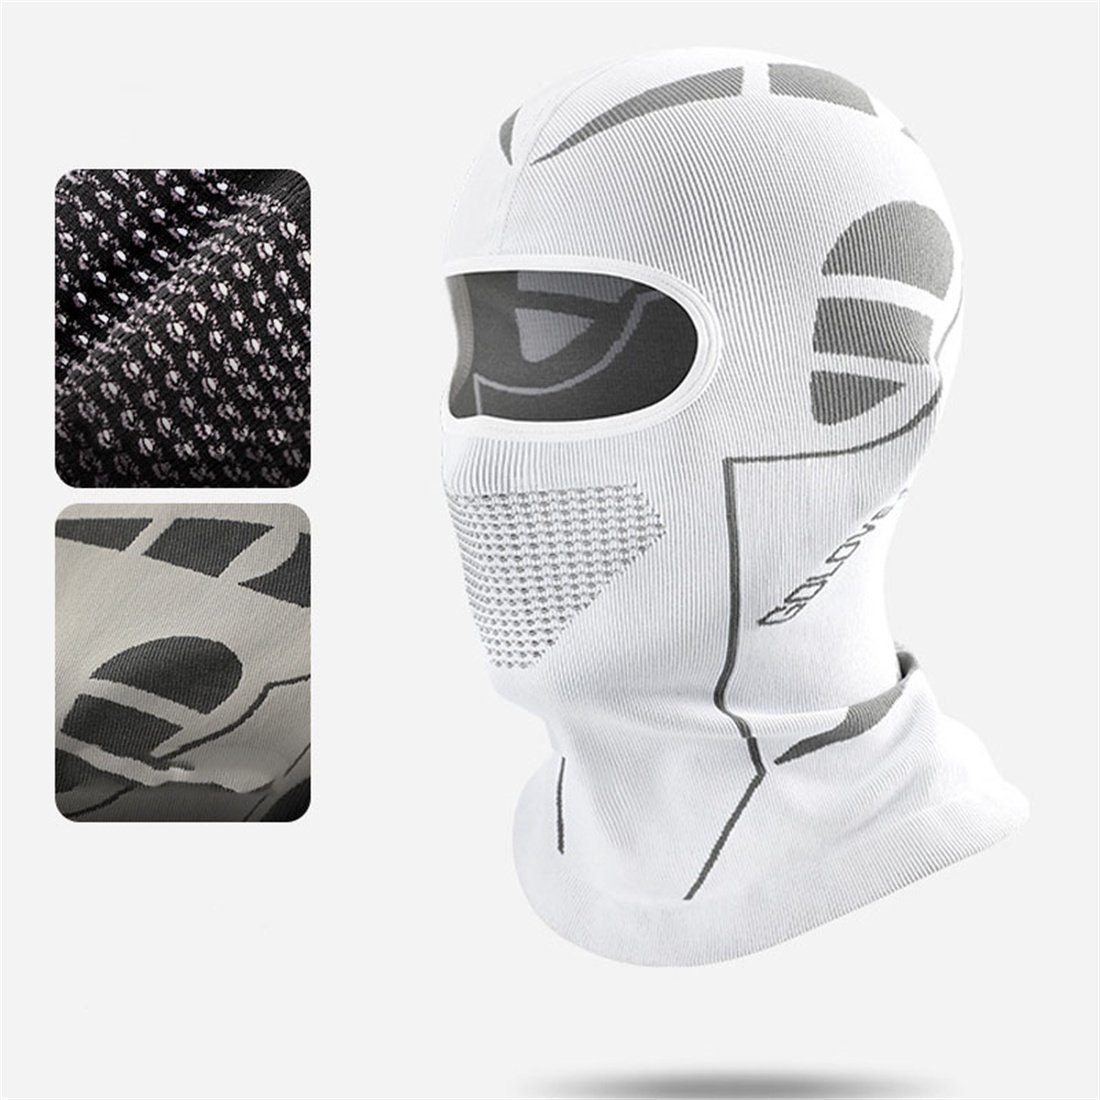 DÖRÖY Sturmhaube WinterOutdoor-Ski-Maske,Radfahren Kopfbedeckung,Anti-Erfrierungs-Maske Weiß